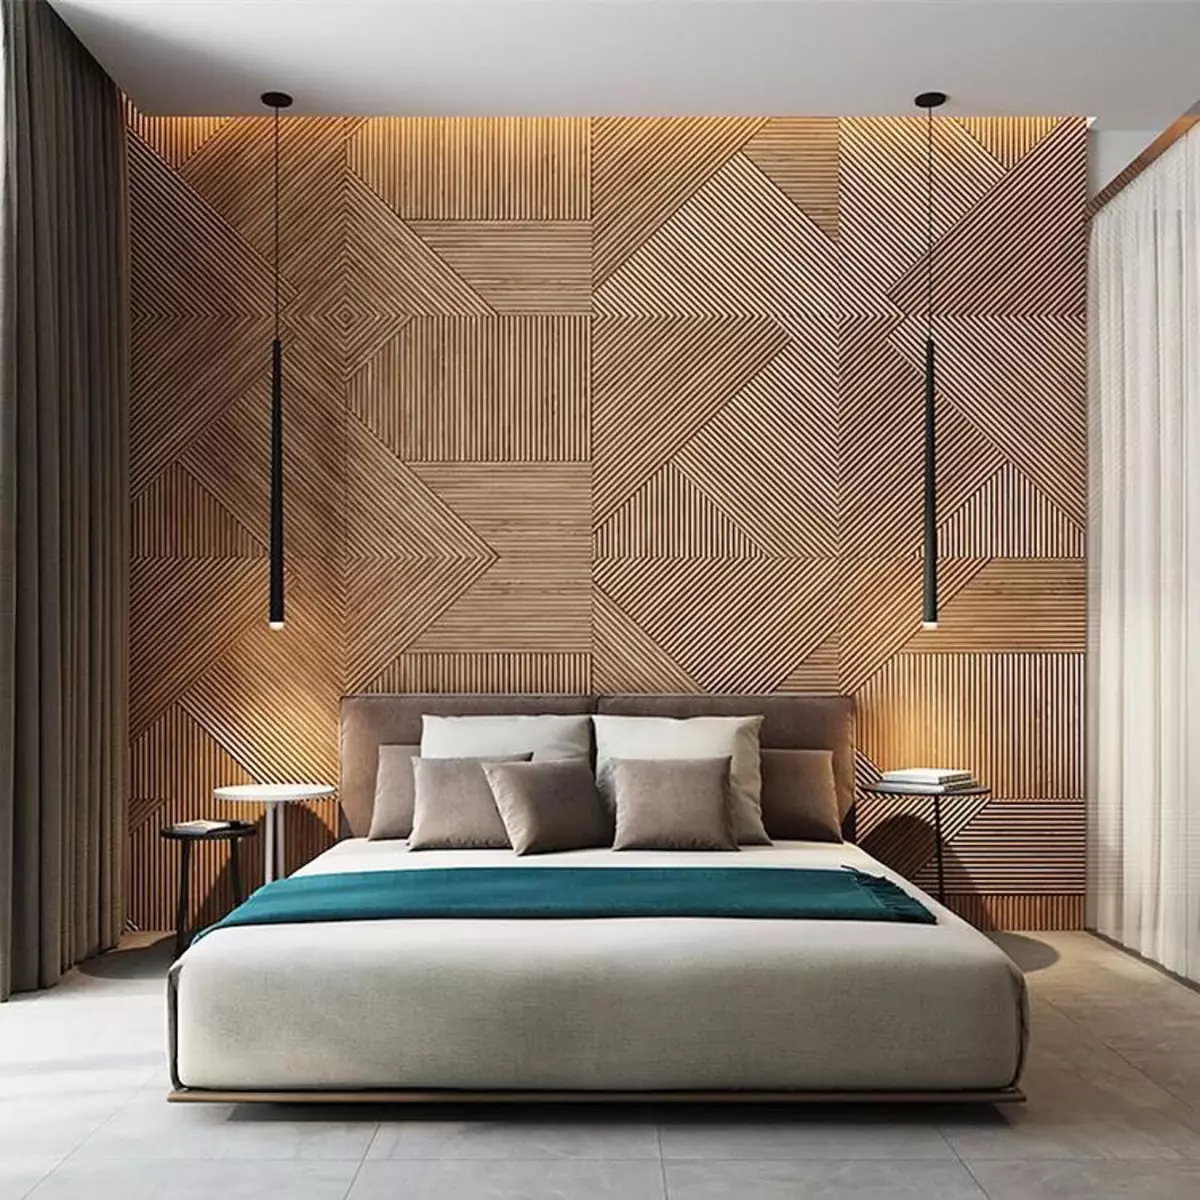 Tấm gỗ làm bằng gỗ tự nhiên để trang trí tường trong trang trí thiết kế nội thất